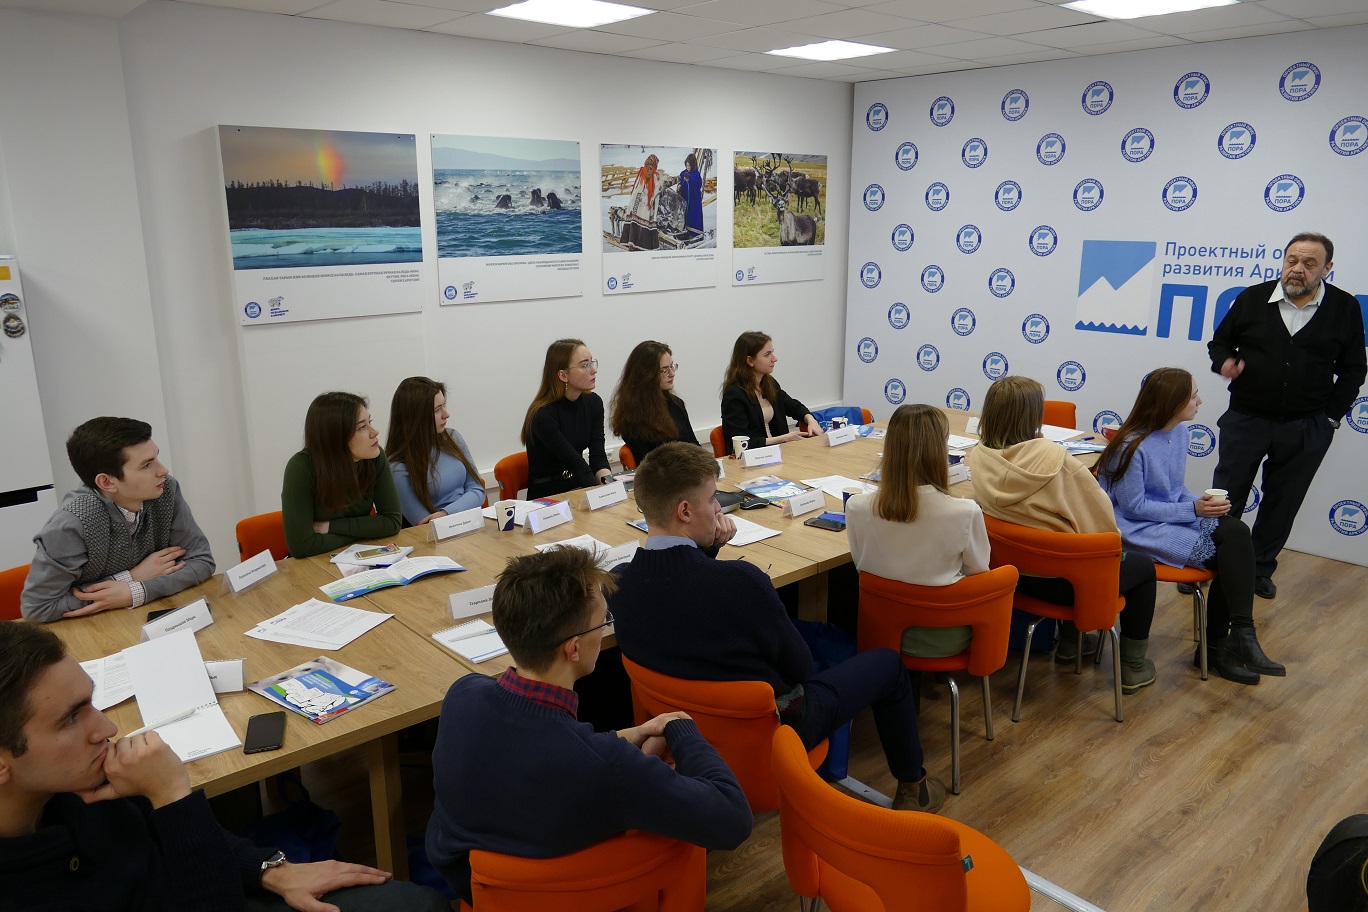 Проектный офис развития Арктики займется подготовкой молодежи для работы на Крайнем Севере